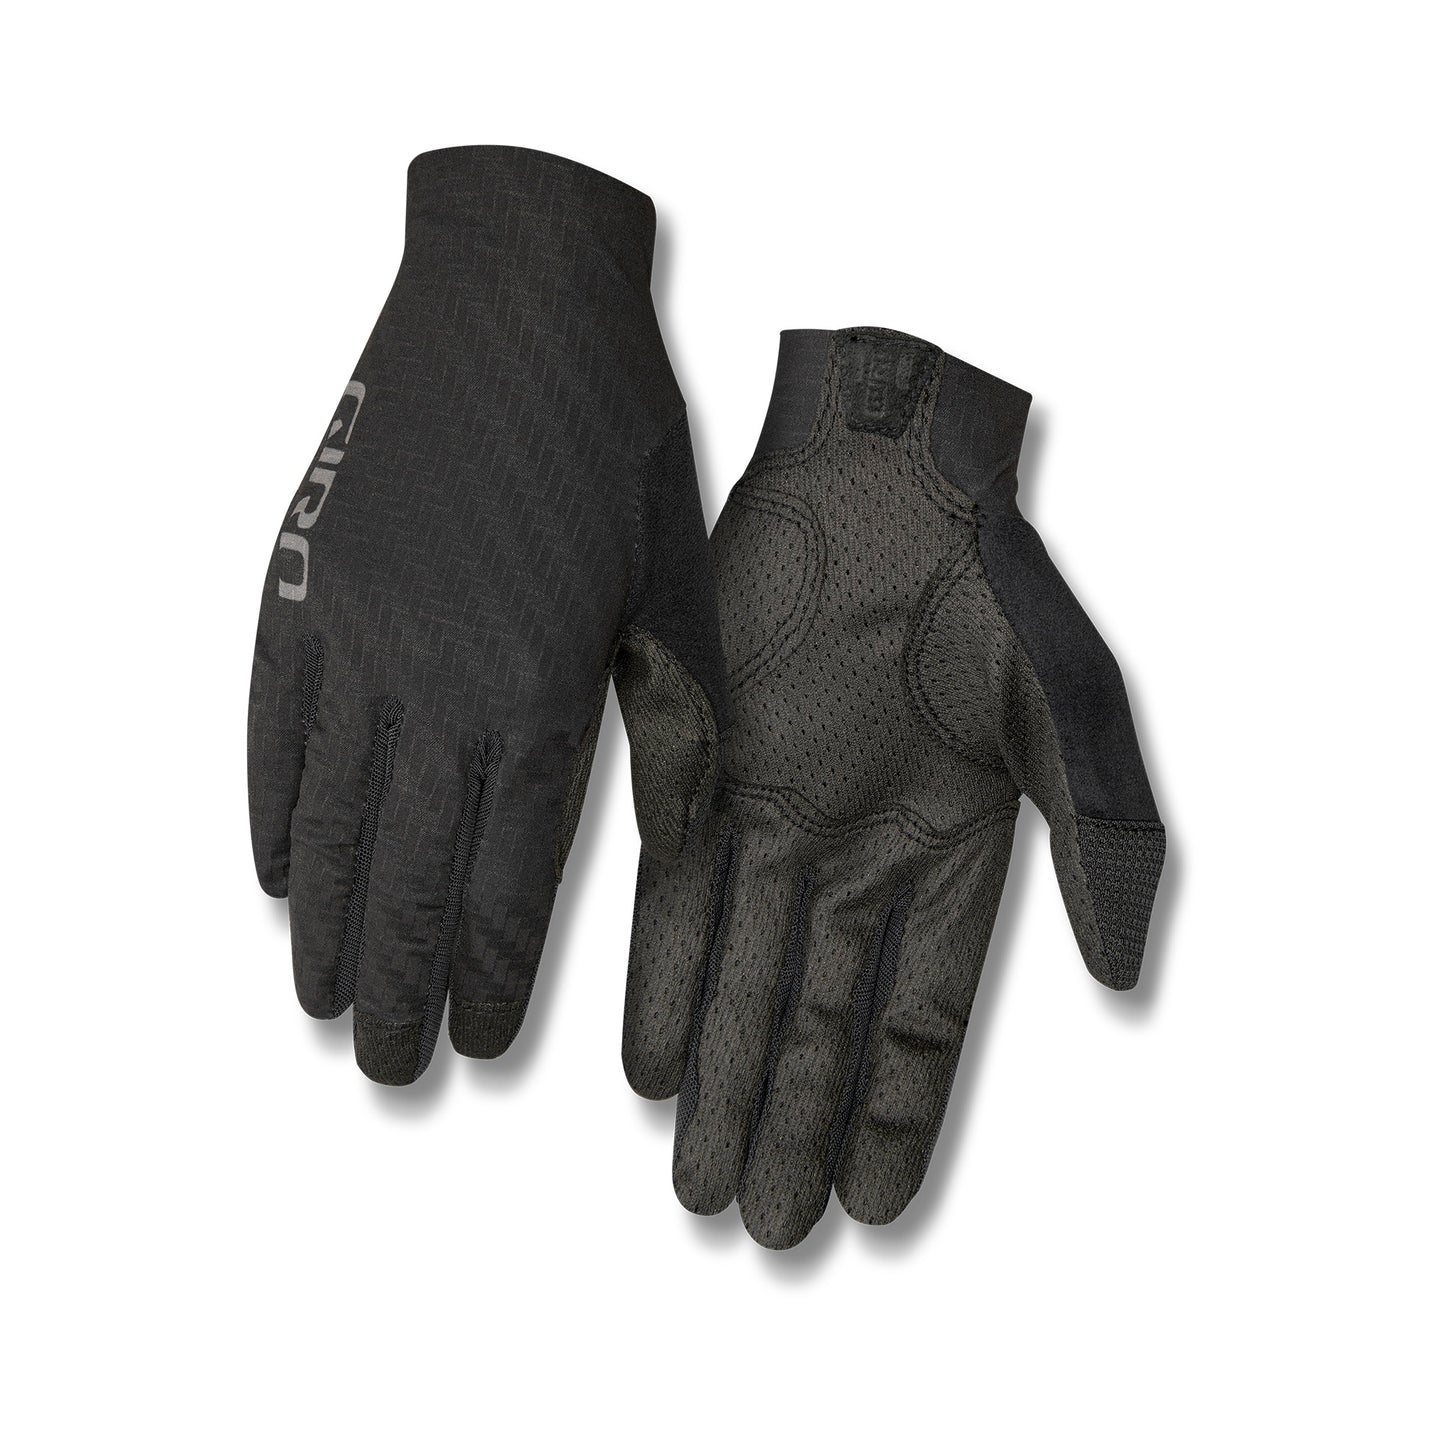 Giro Women's Riv'ette CS Glove Titanium/Black Bike Gloves